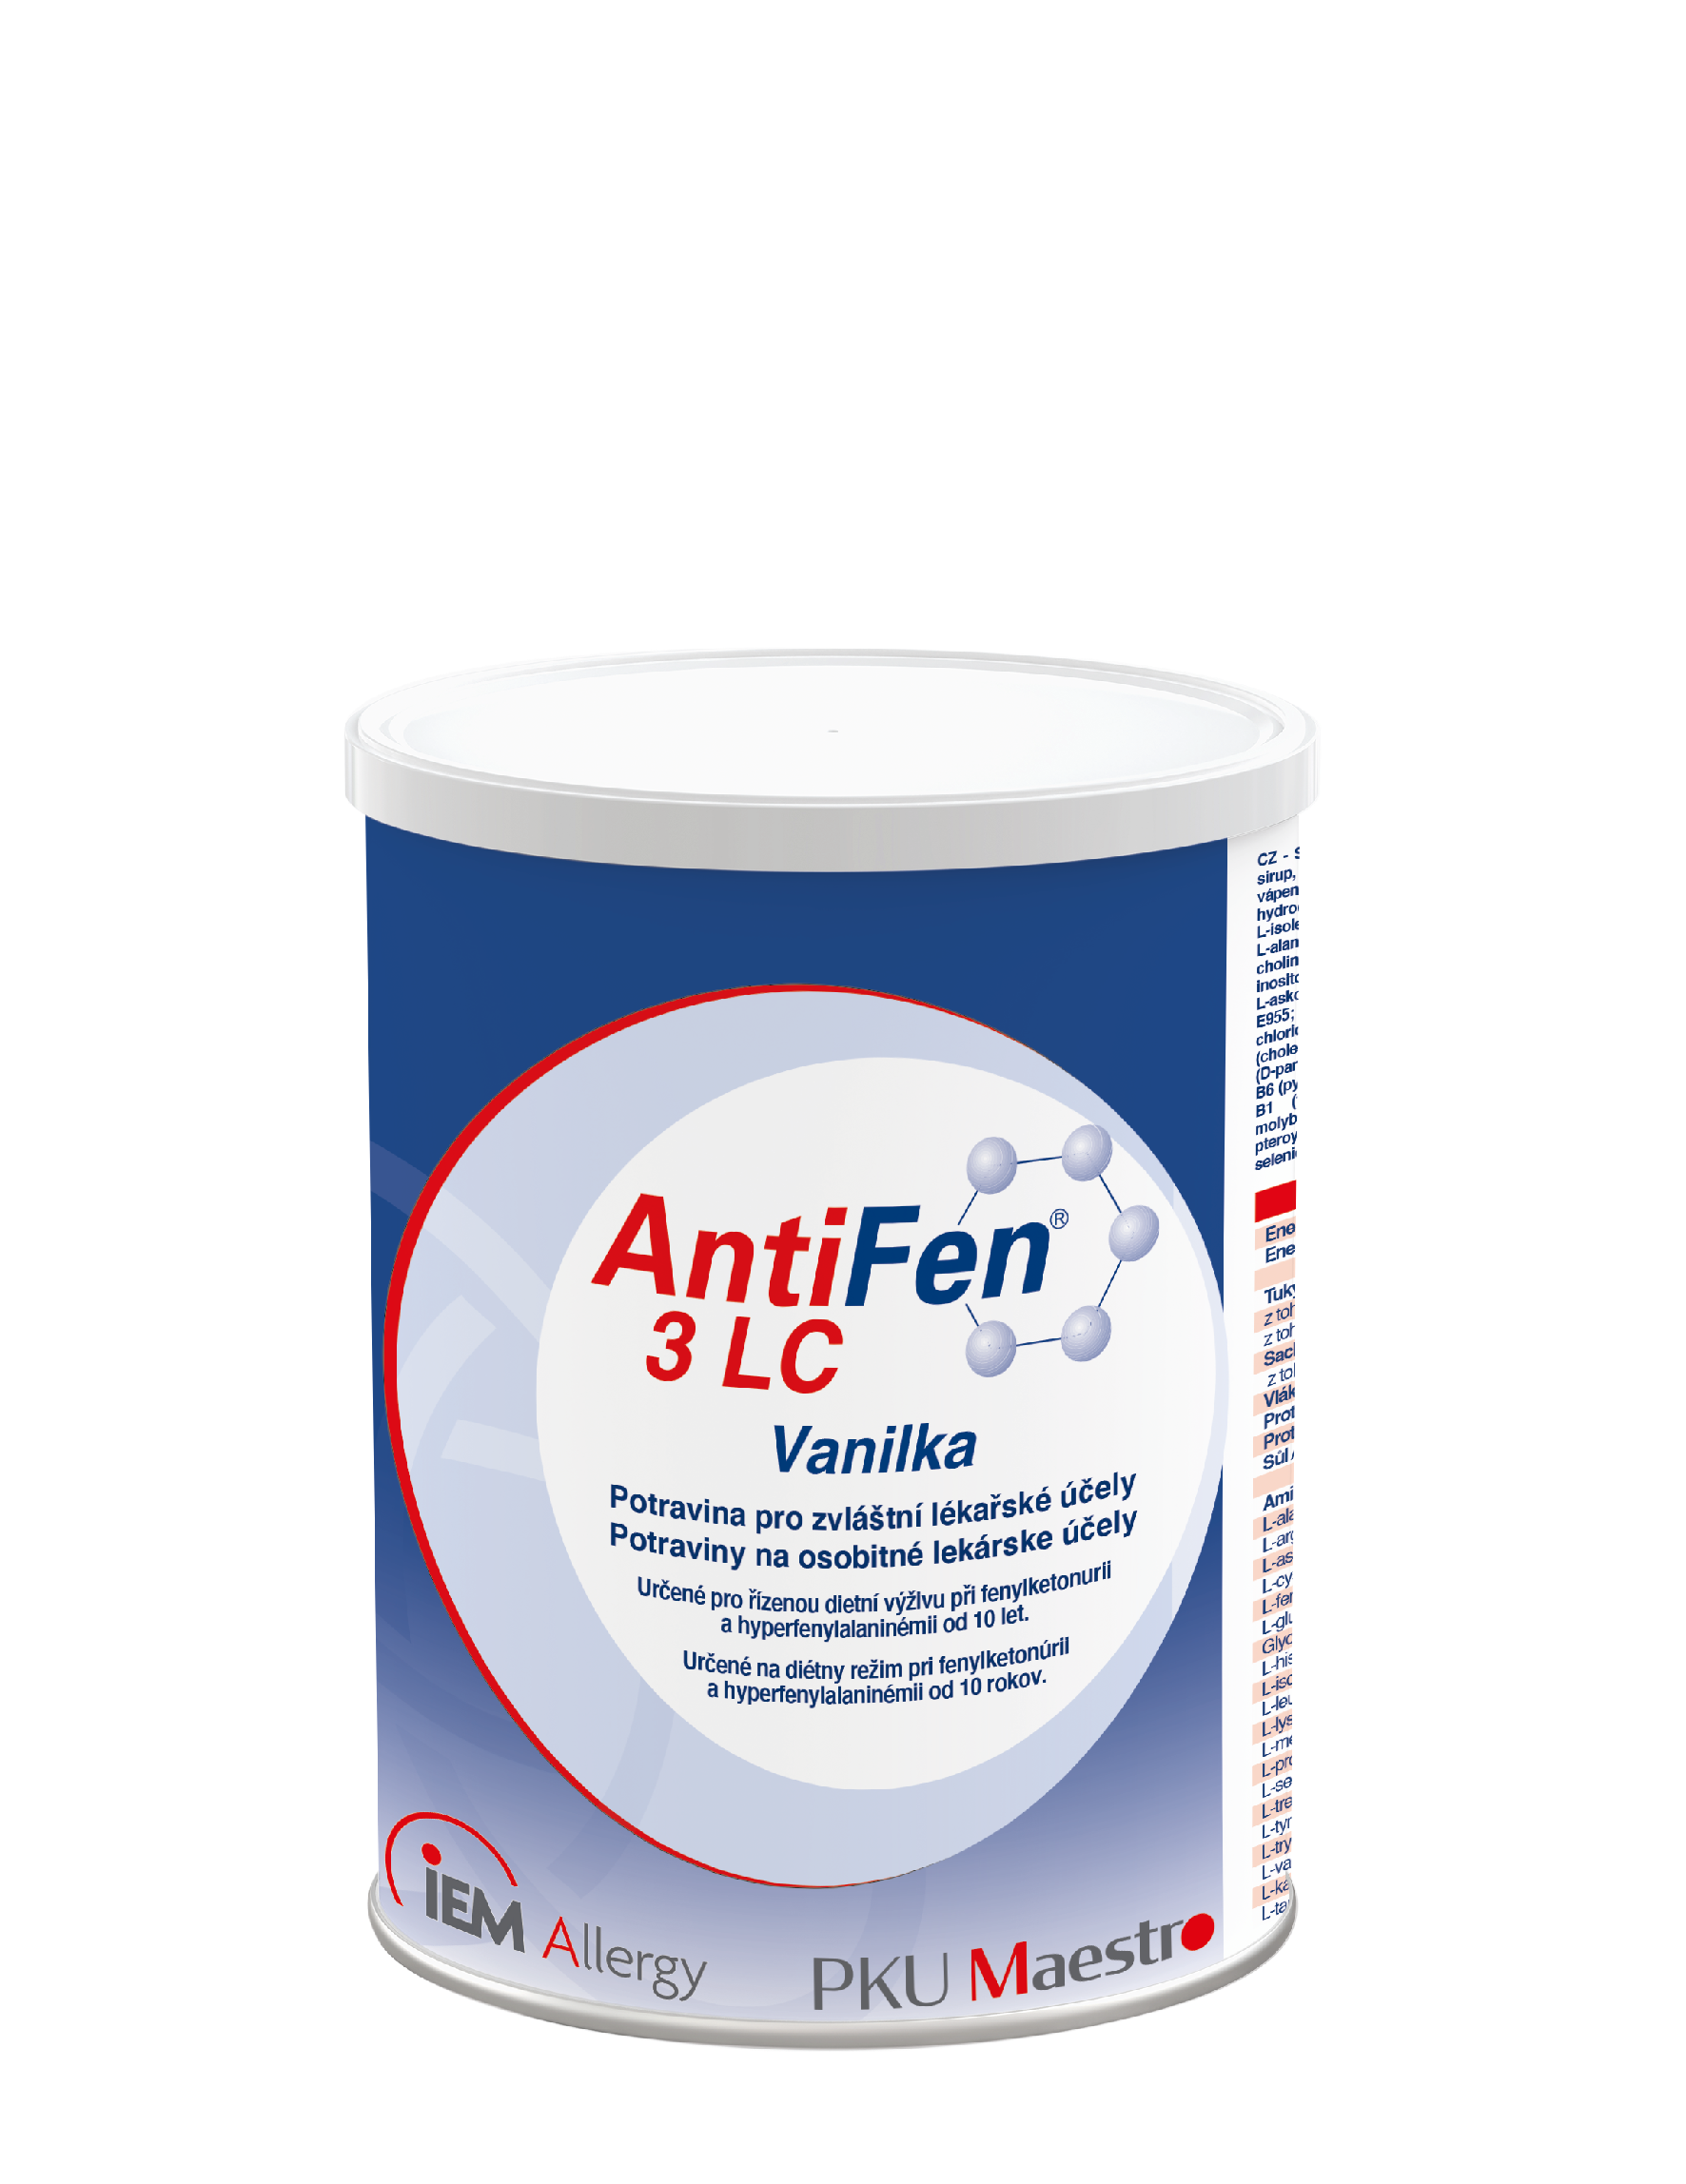 AntiFen 3 LC Vanilka